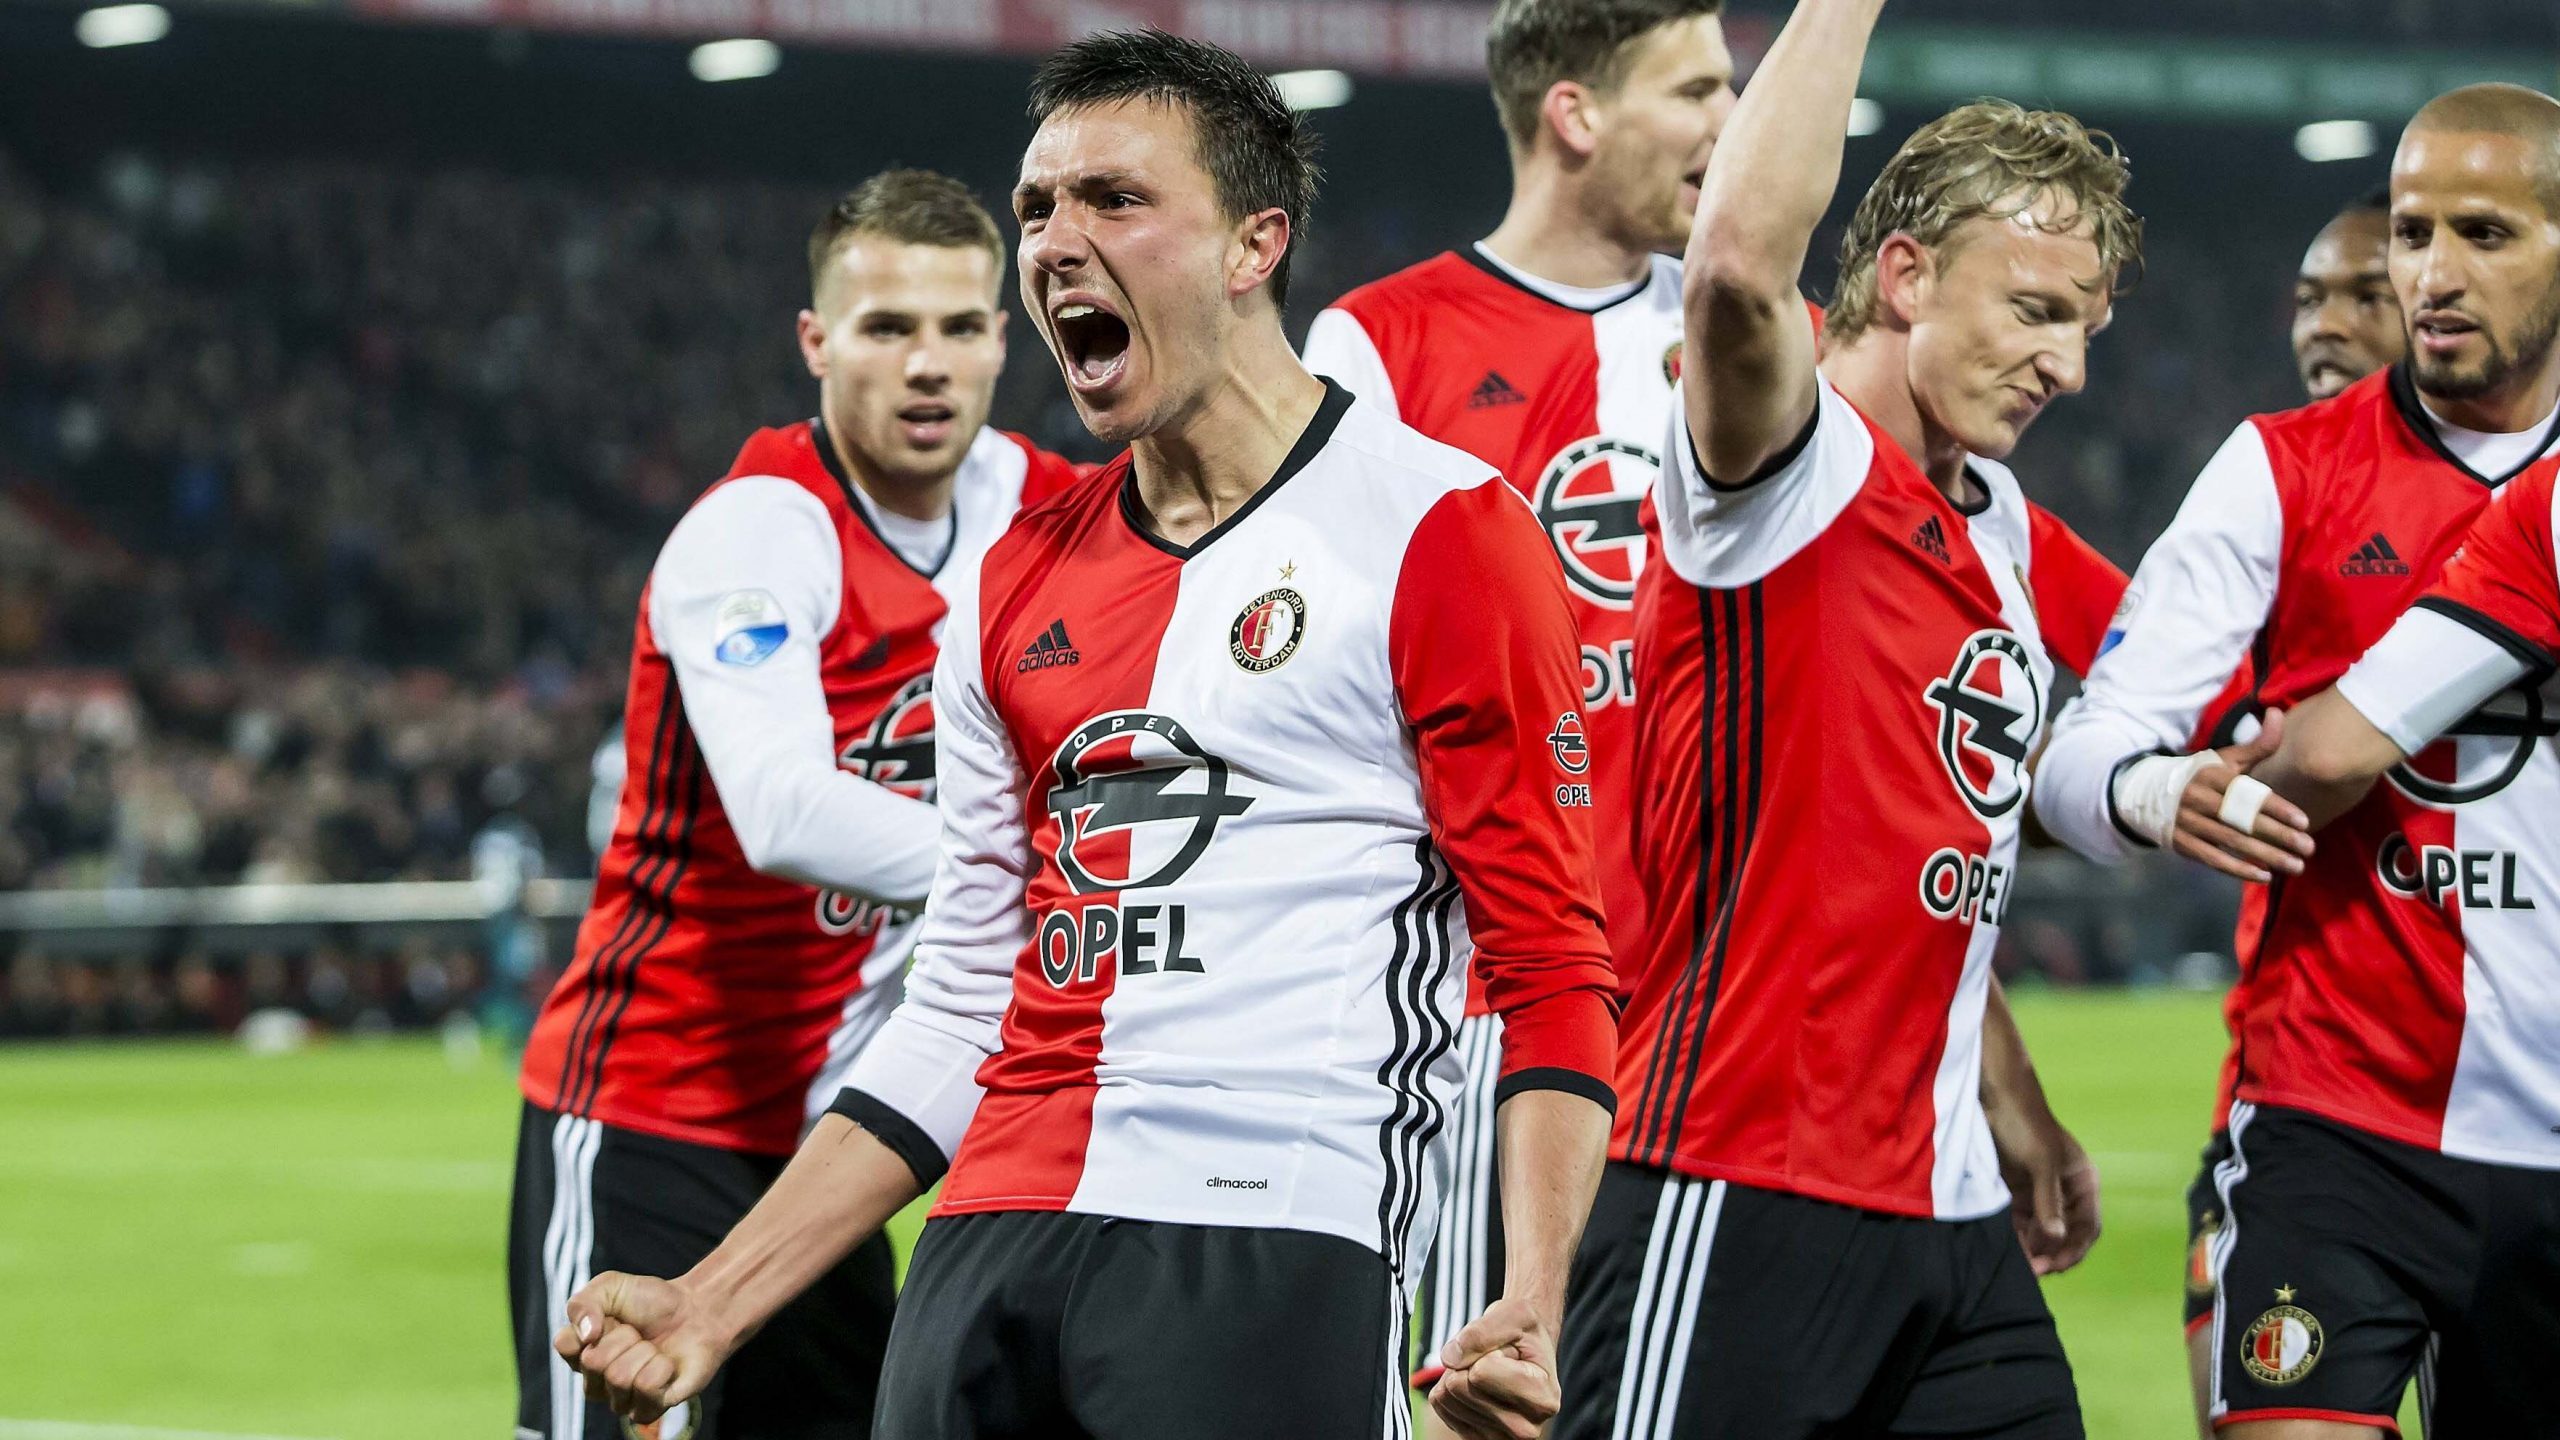 Star+ estreia, com exclusividade, série sobre o time Feyenoord